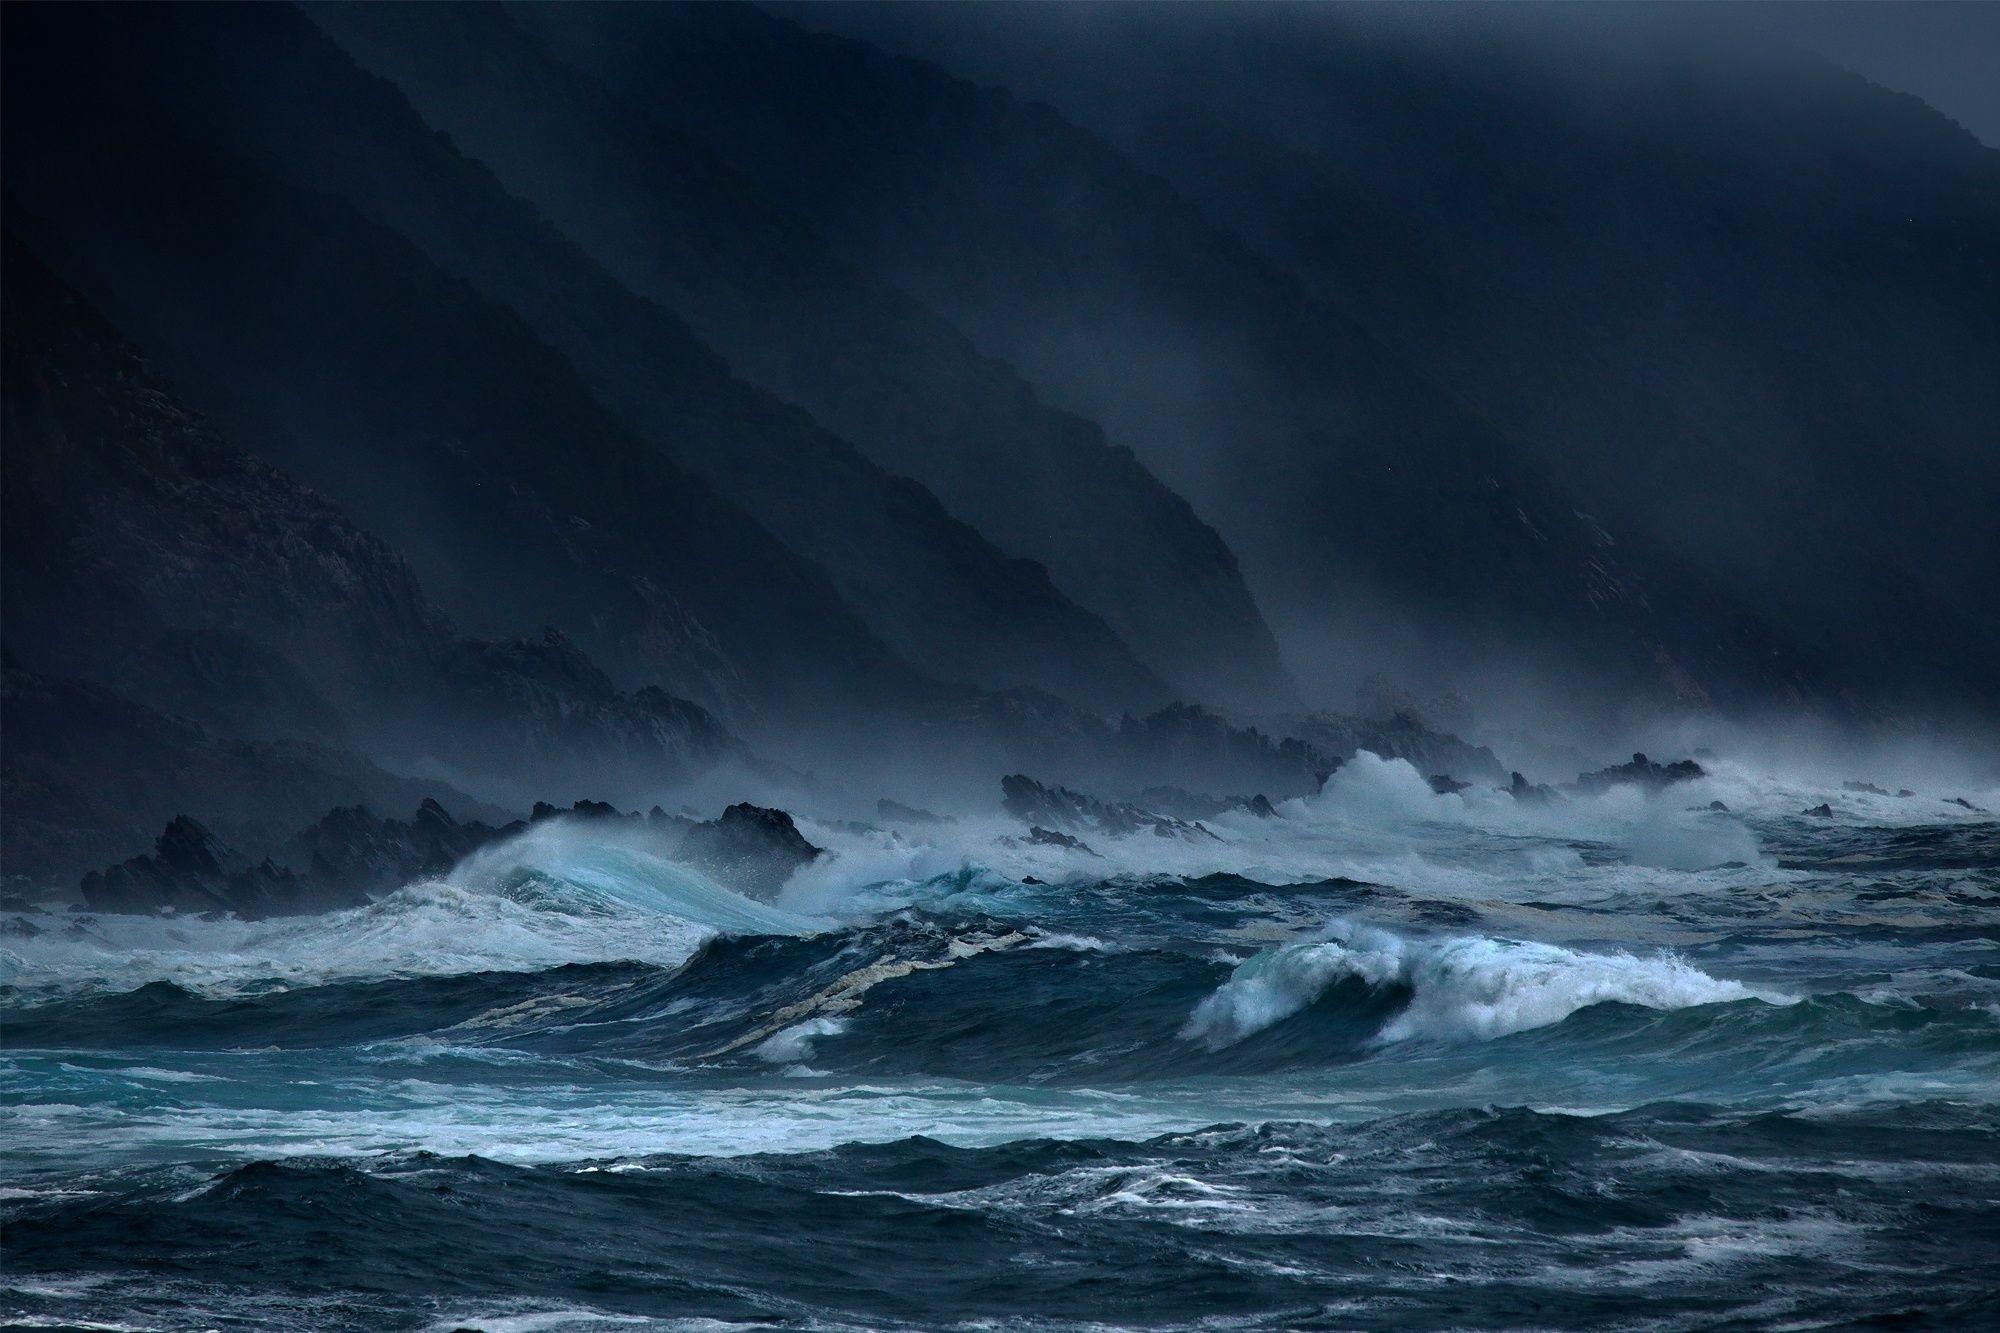 Atlantic Ocean, Ocean storm, Dramatic skies, Powerful waves, 2000x1340 HD Desktop